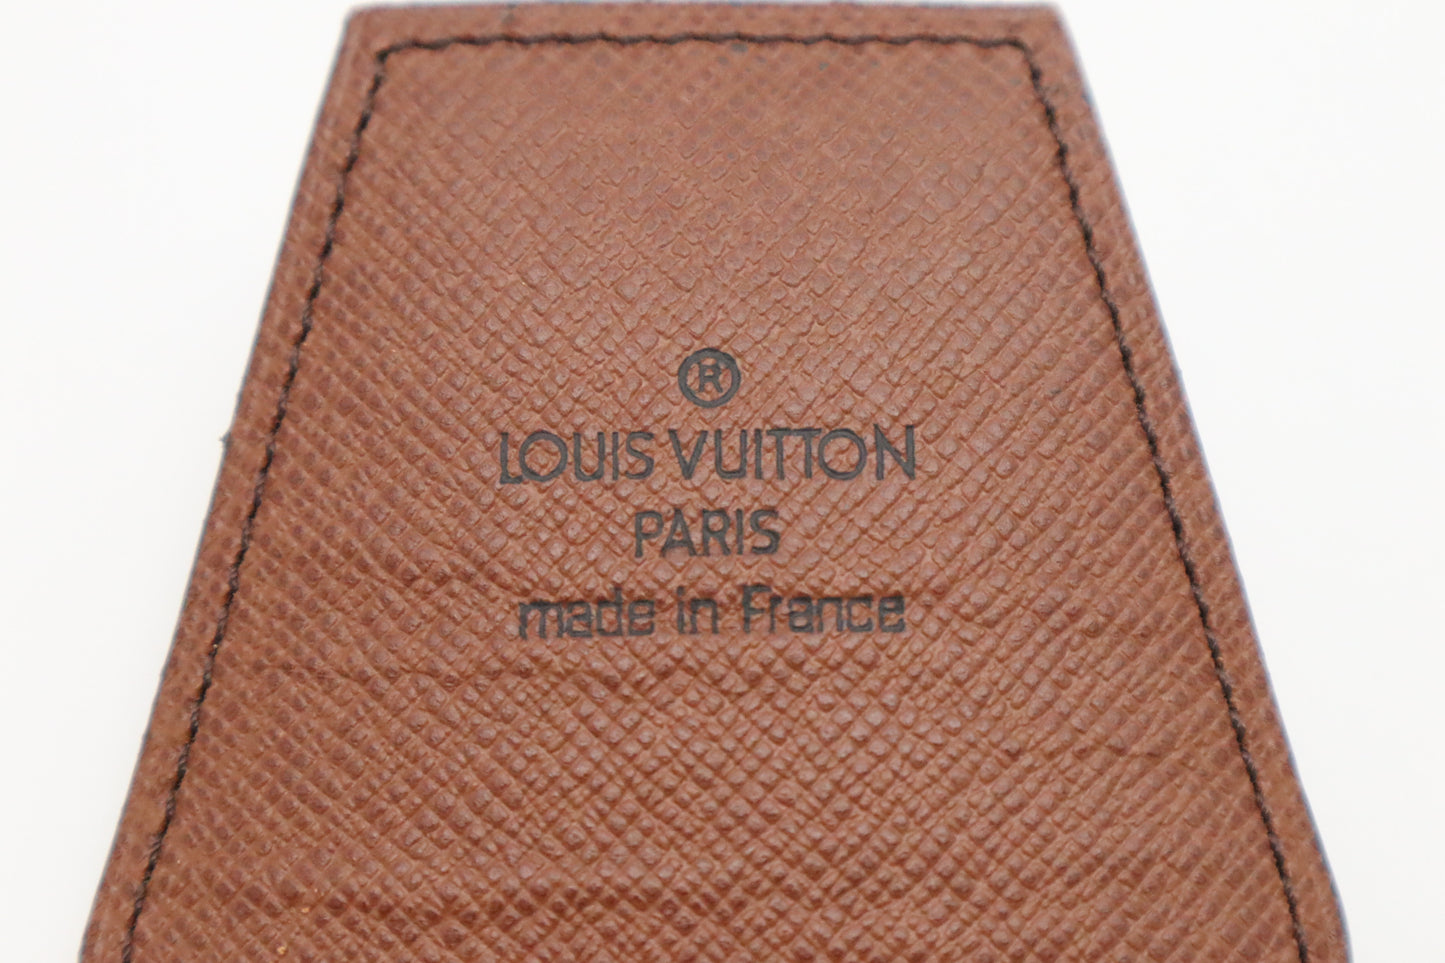 Louis Vuitton Cigarette Case in Monogram Canvas